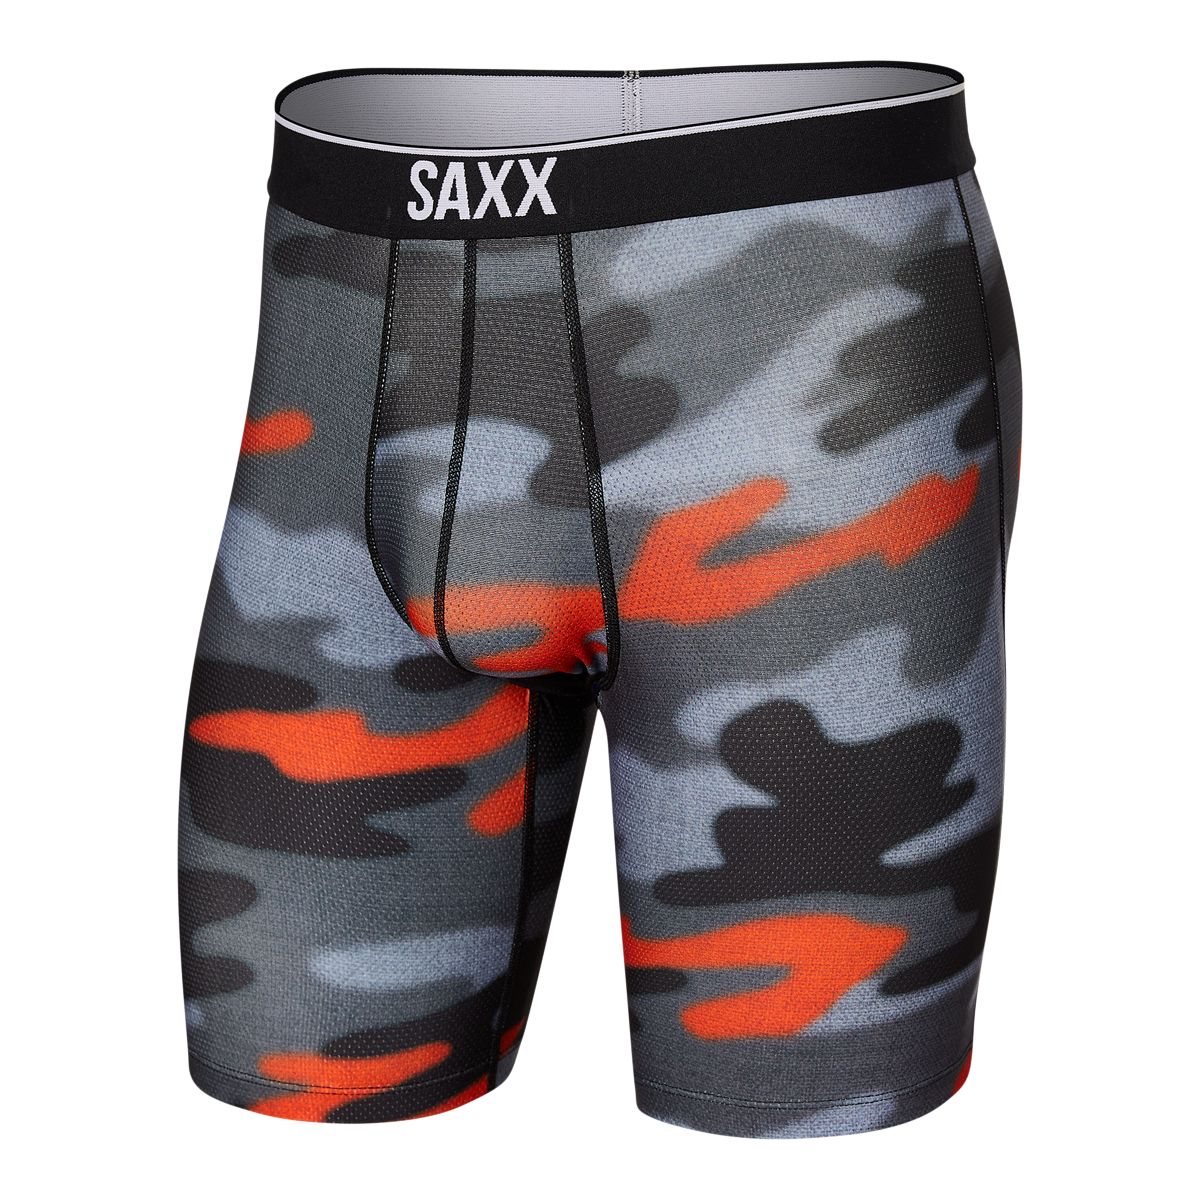 saxx men's boxer briefs